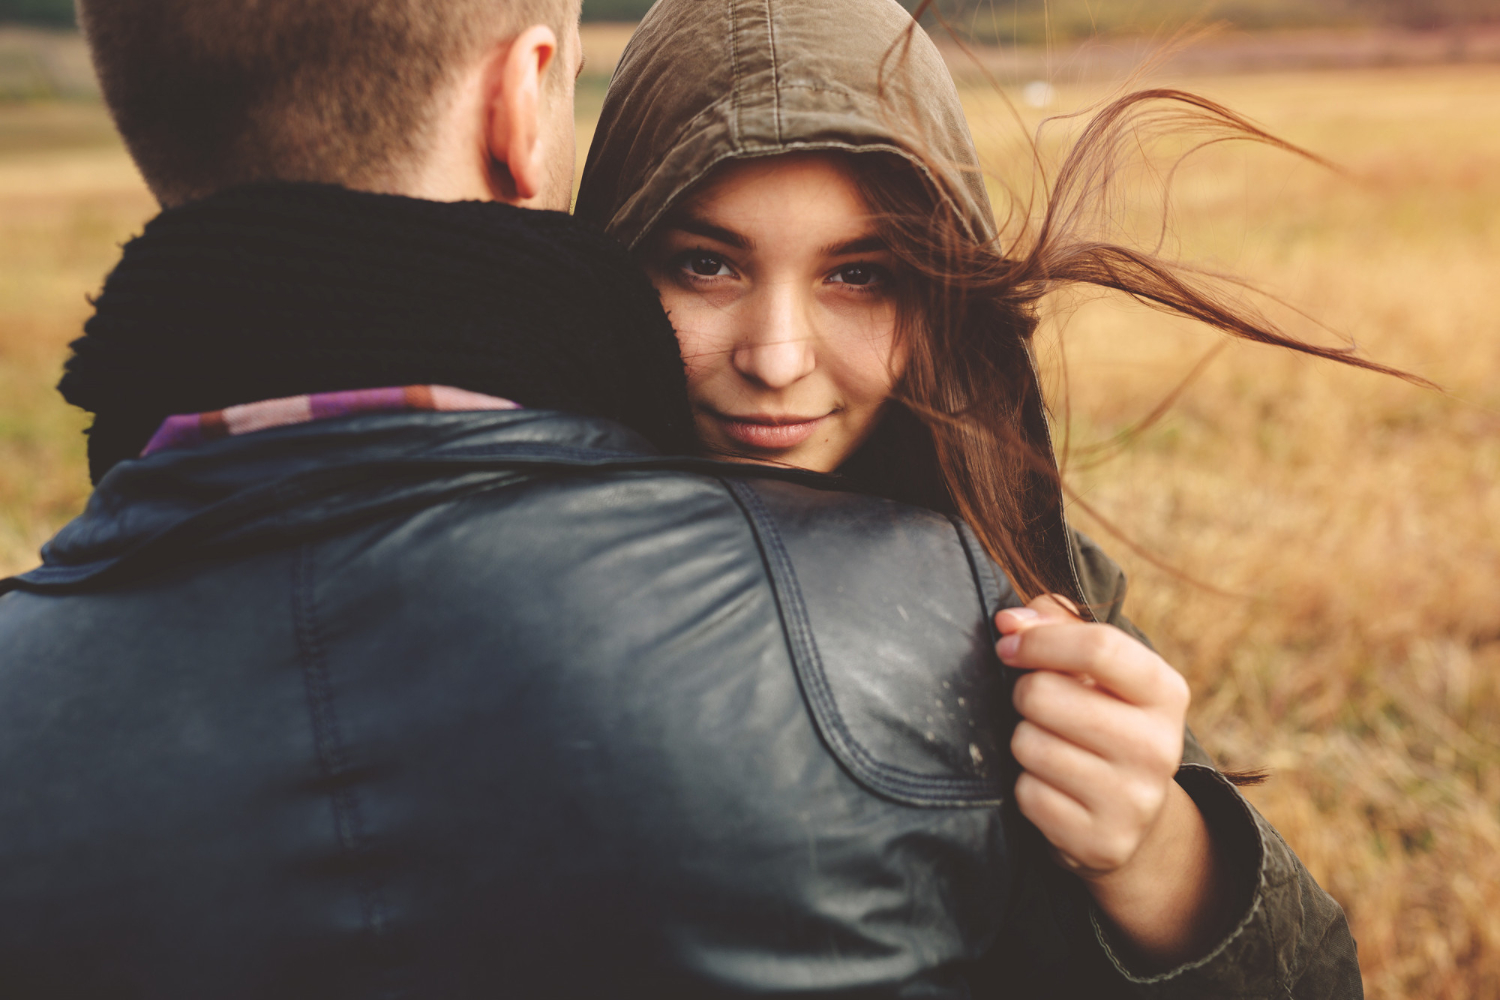 Бомбардировка любовью: 8 признака, что партнер делает это с вами
